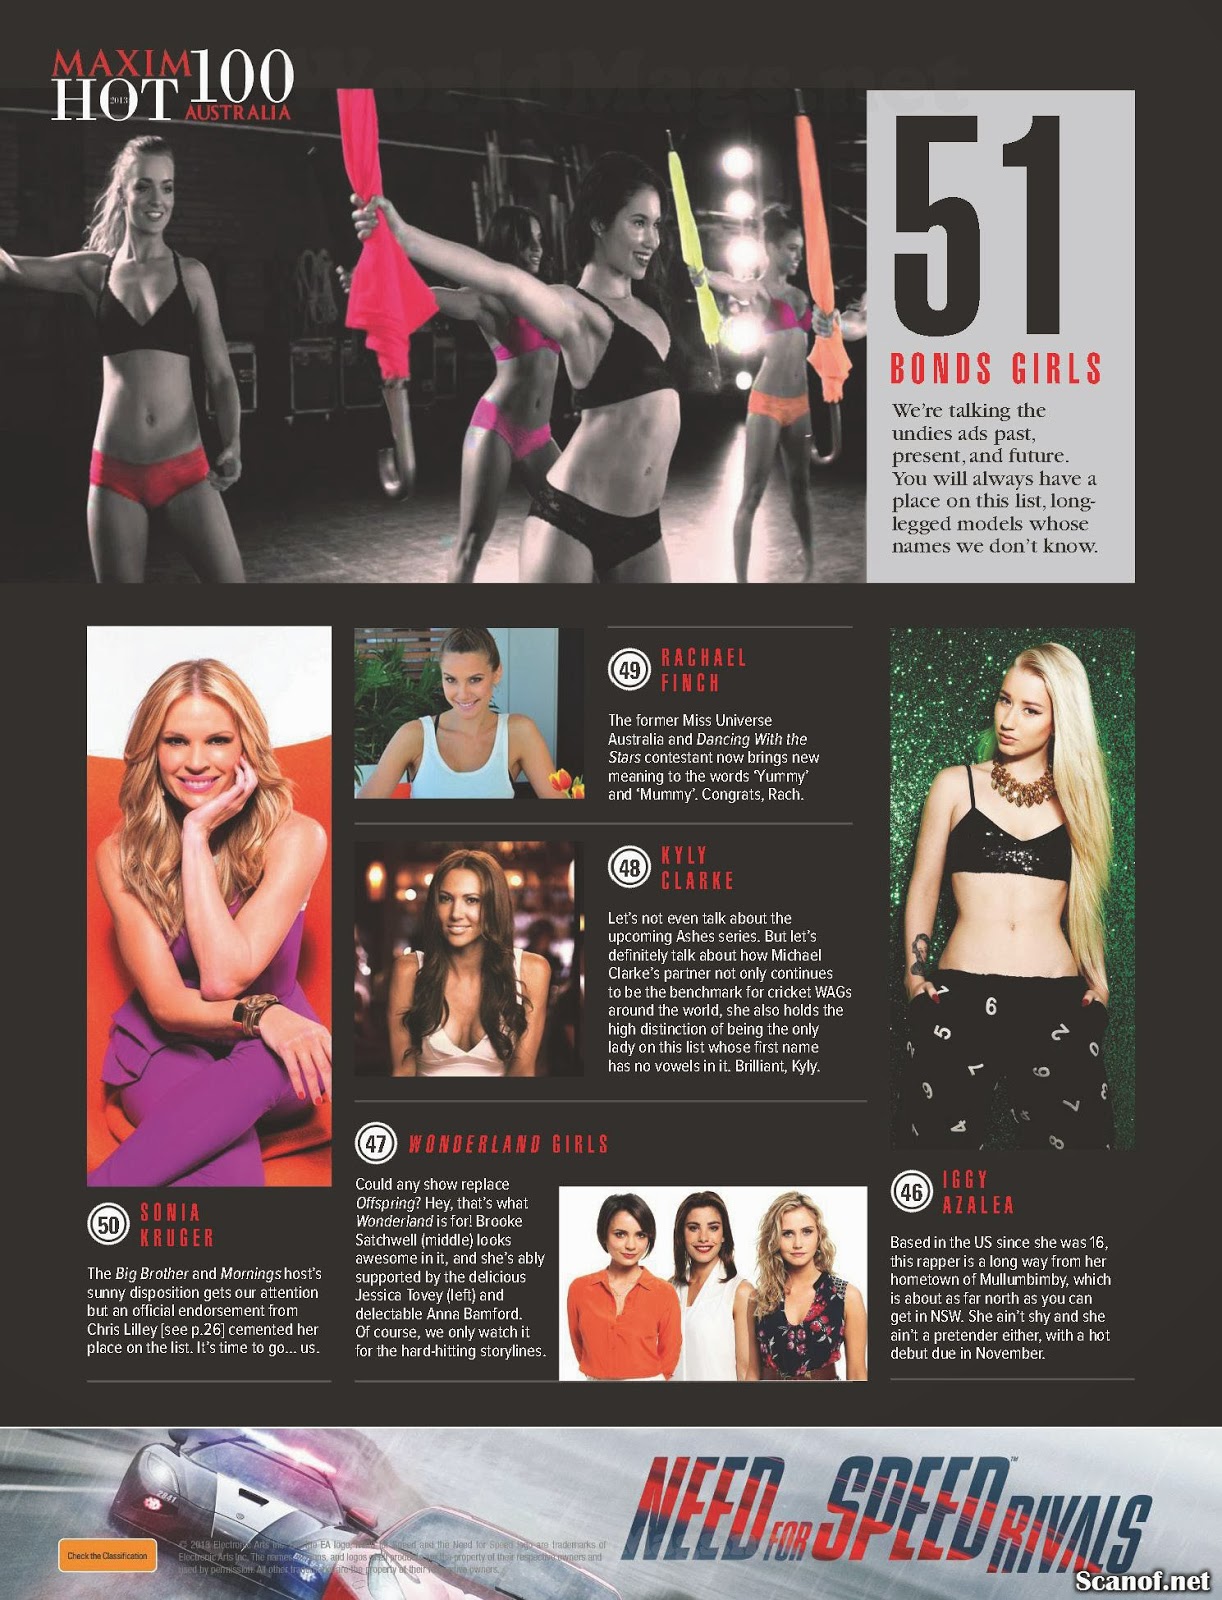 Hot 100 Maxim Australia [november 2013] Magazine Scans